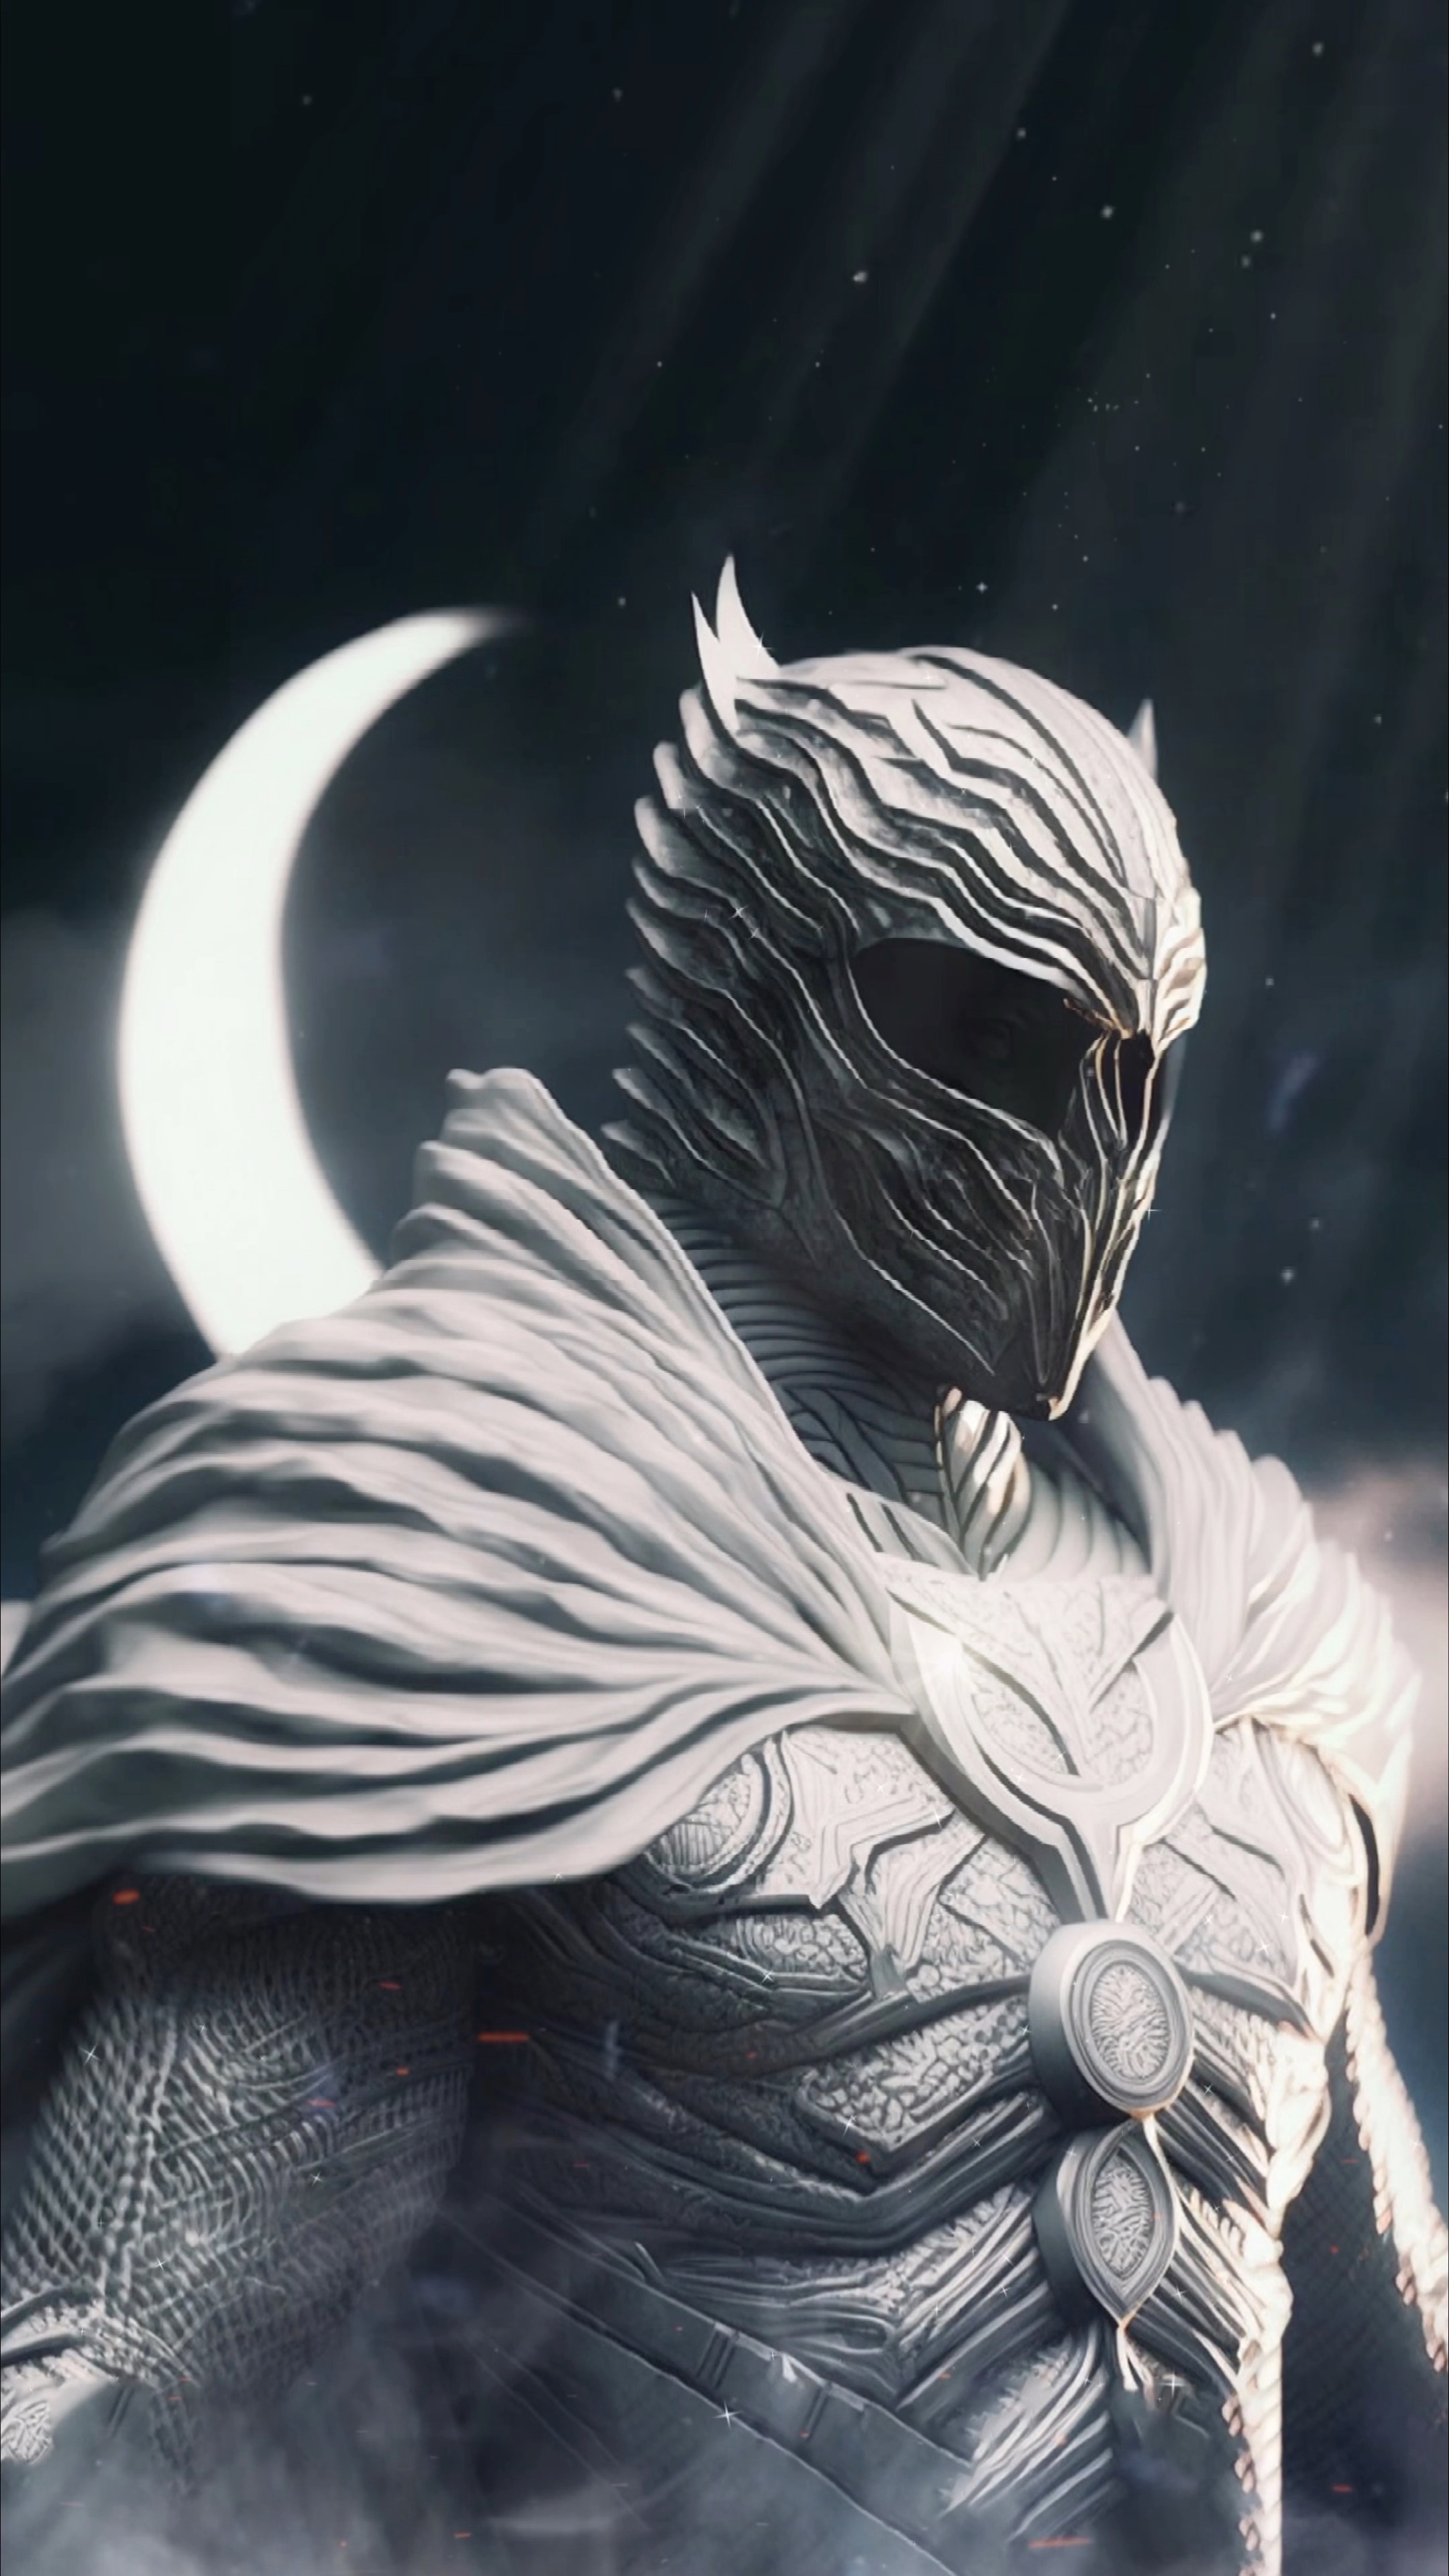 月光骑士 黑白世界的神秘与力量